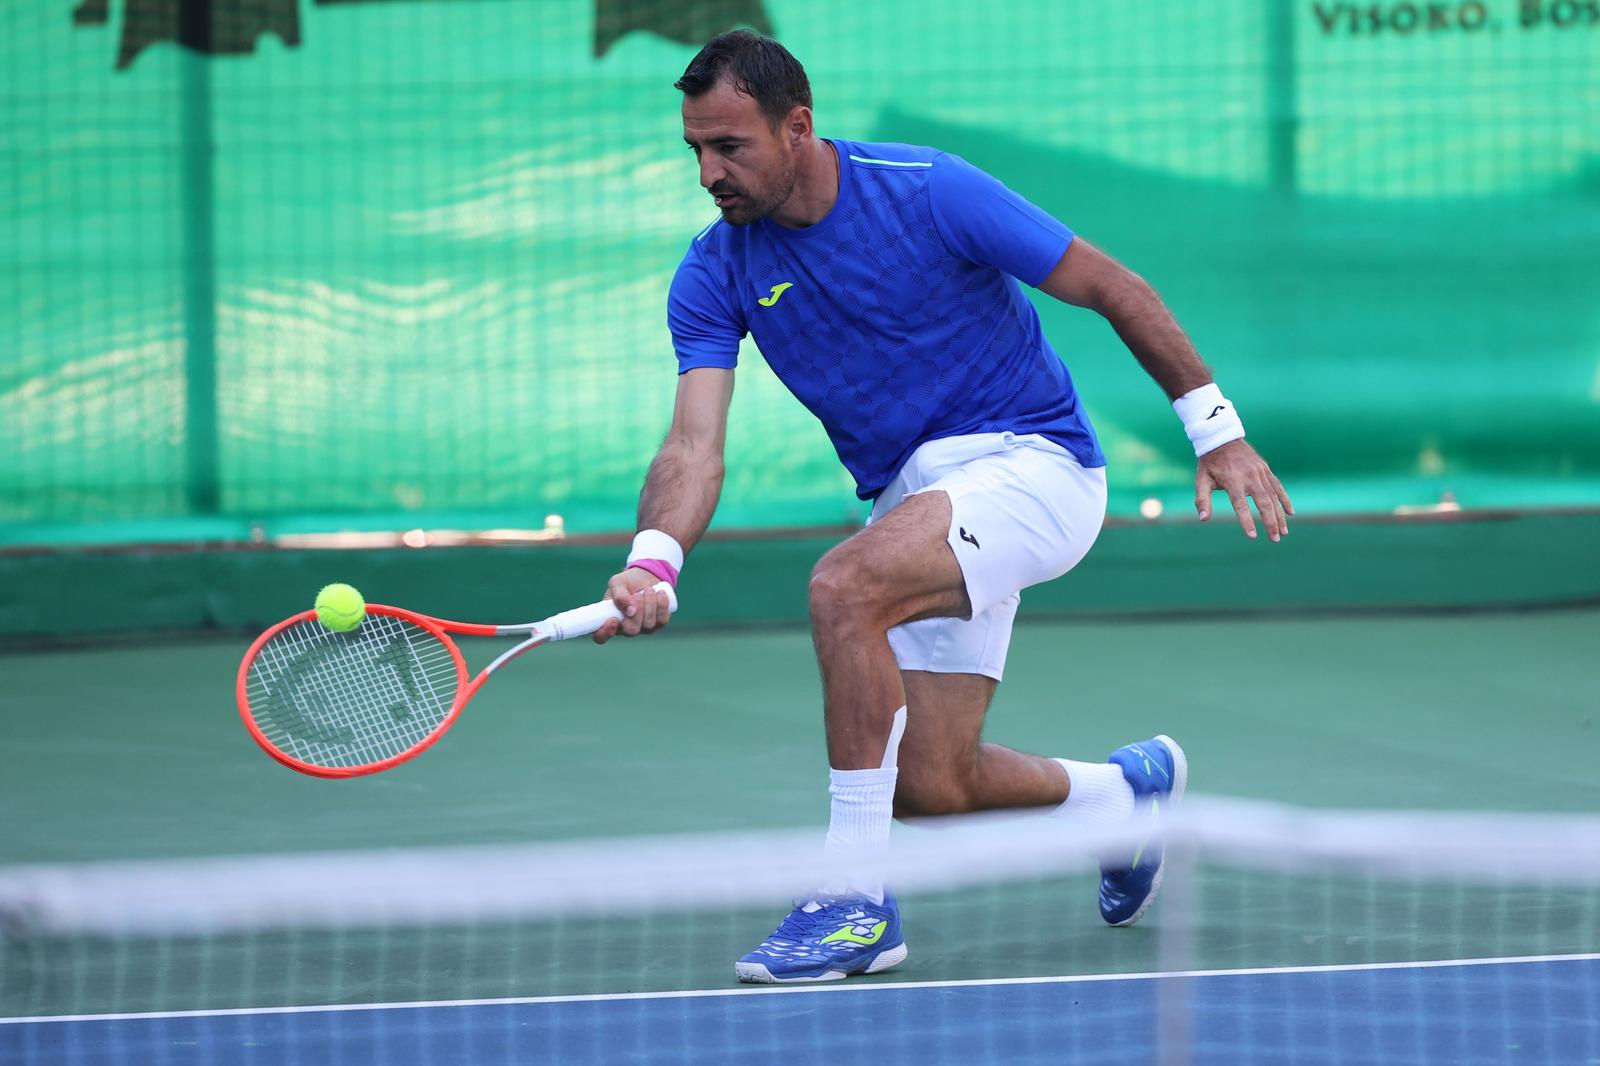 13.07.2022., Visoko, Bosna i Hercegovina - Novak Djokovic odigrao je s Ivanom Dodigom ekshibicijski teniski susret u Visokom.  Photo: Armin Durgut/PIXSELL